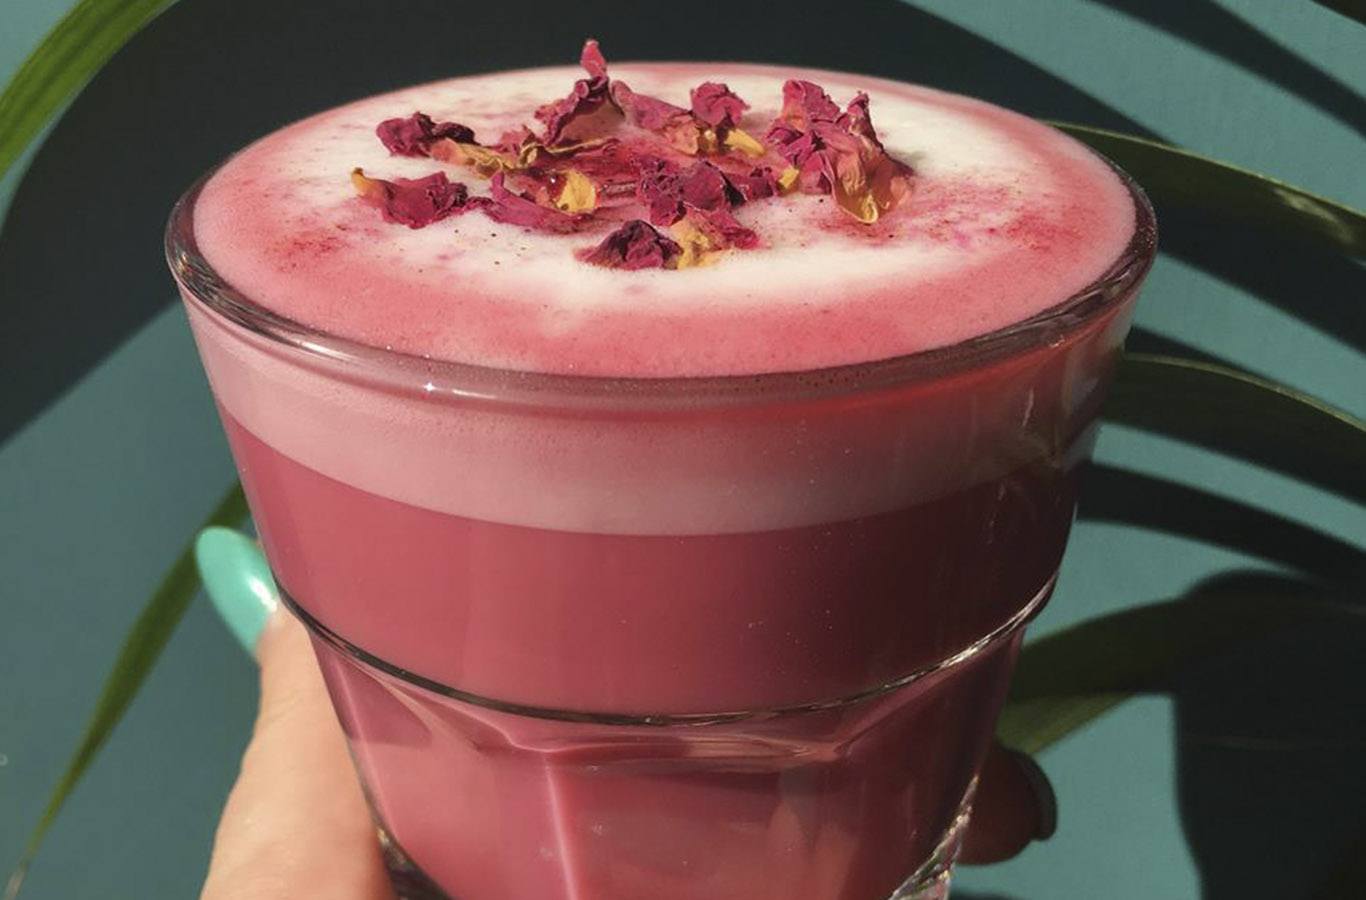 Deptford Does Art superfood latte - pink with rose petals